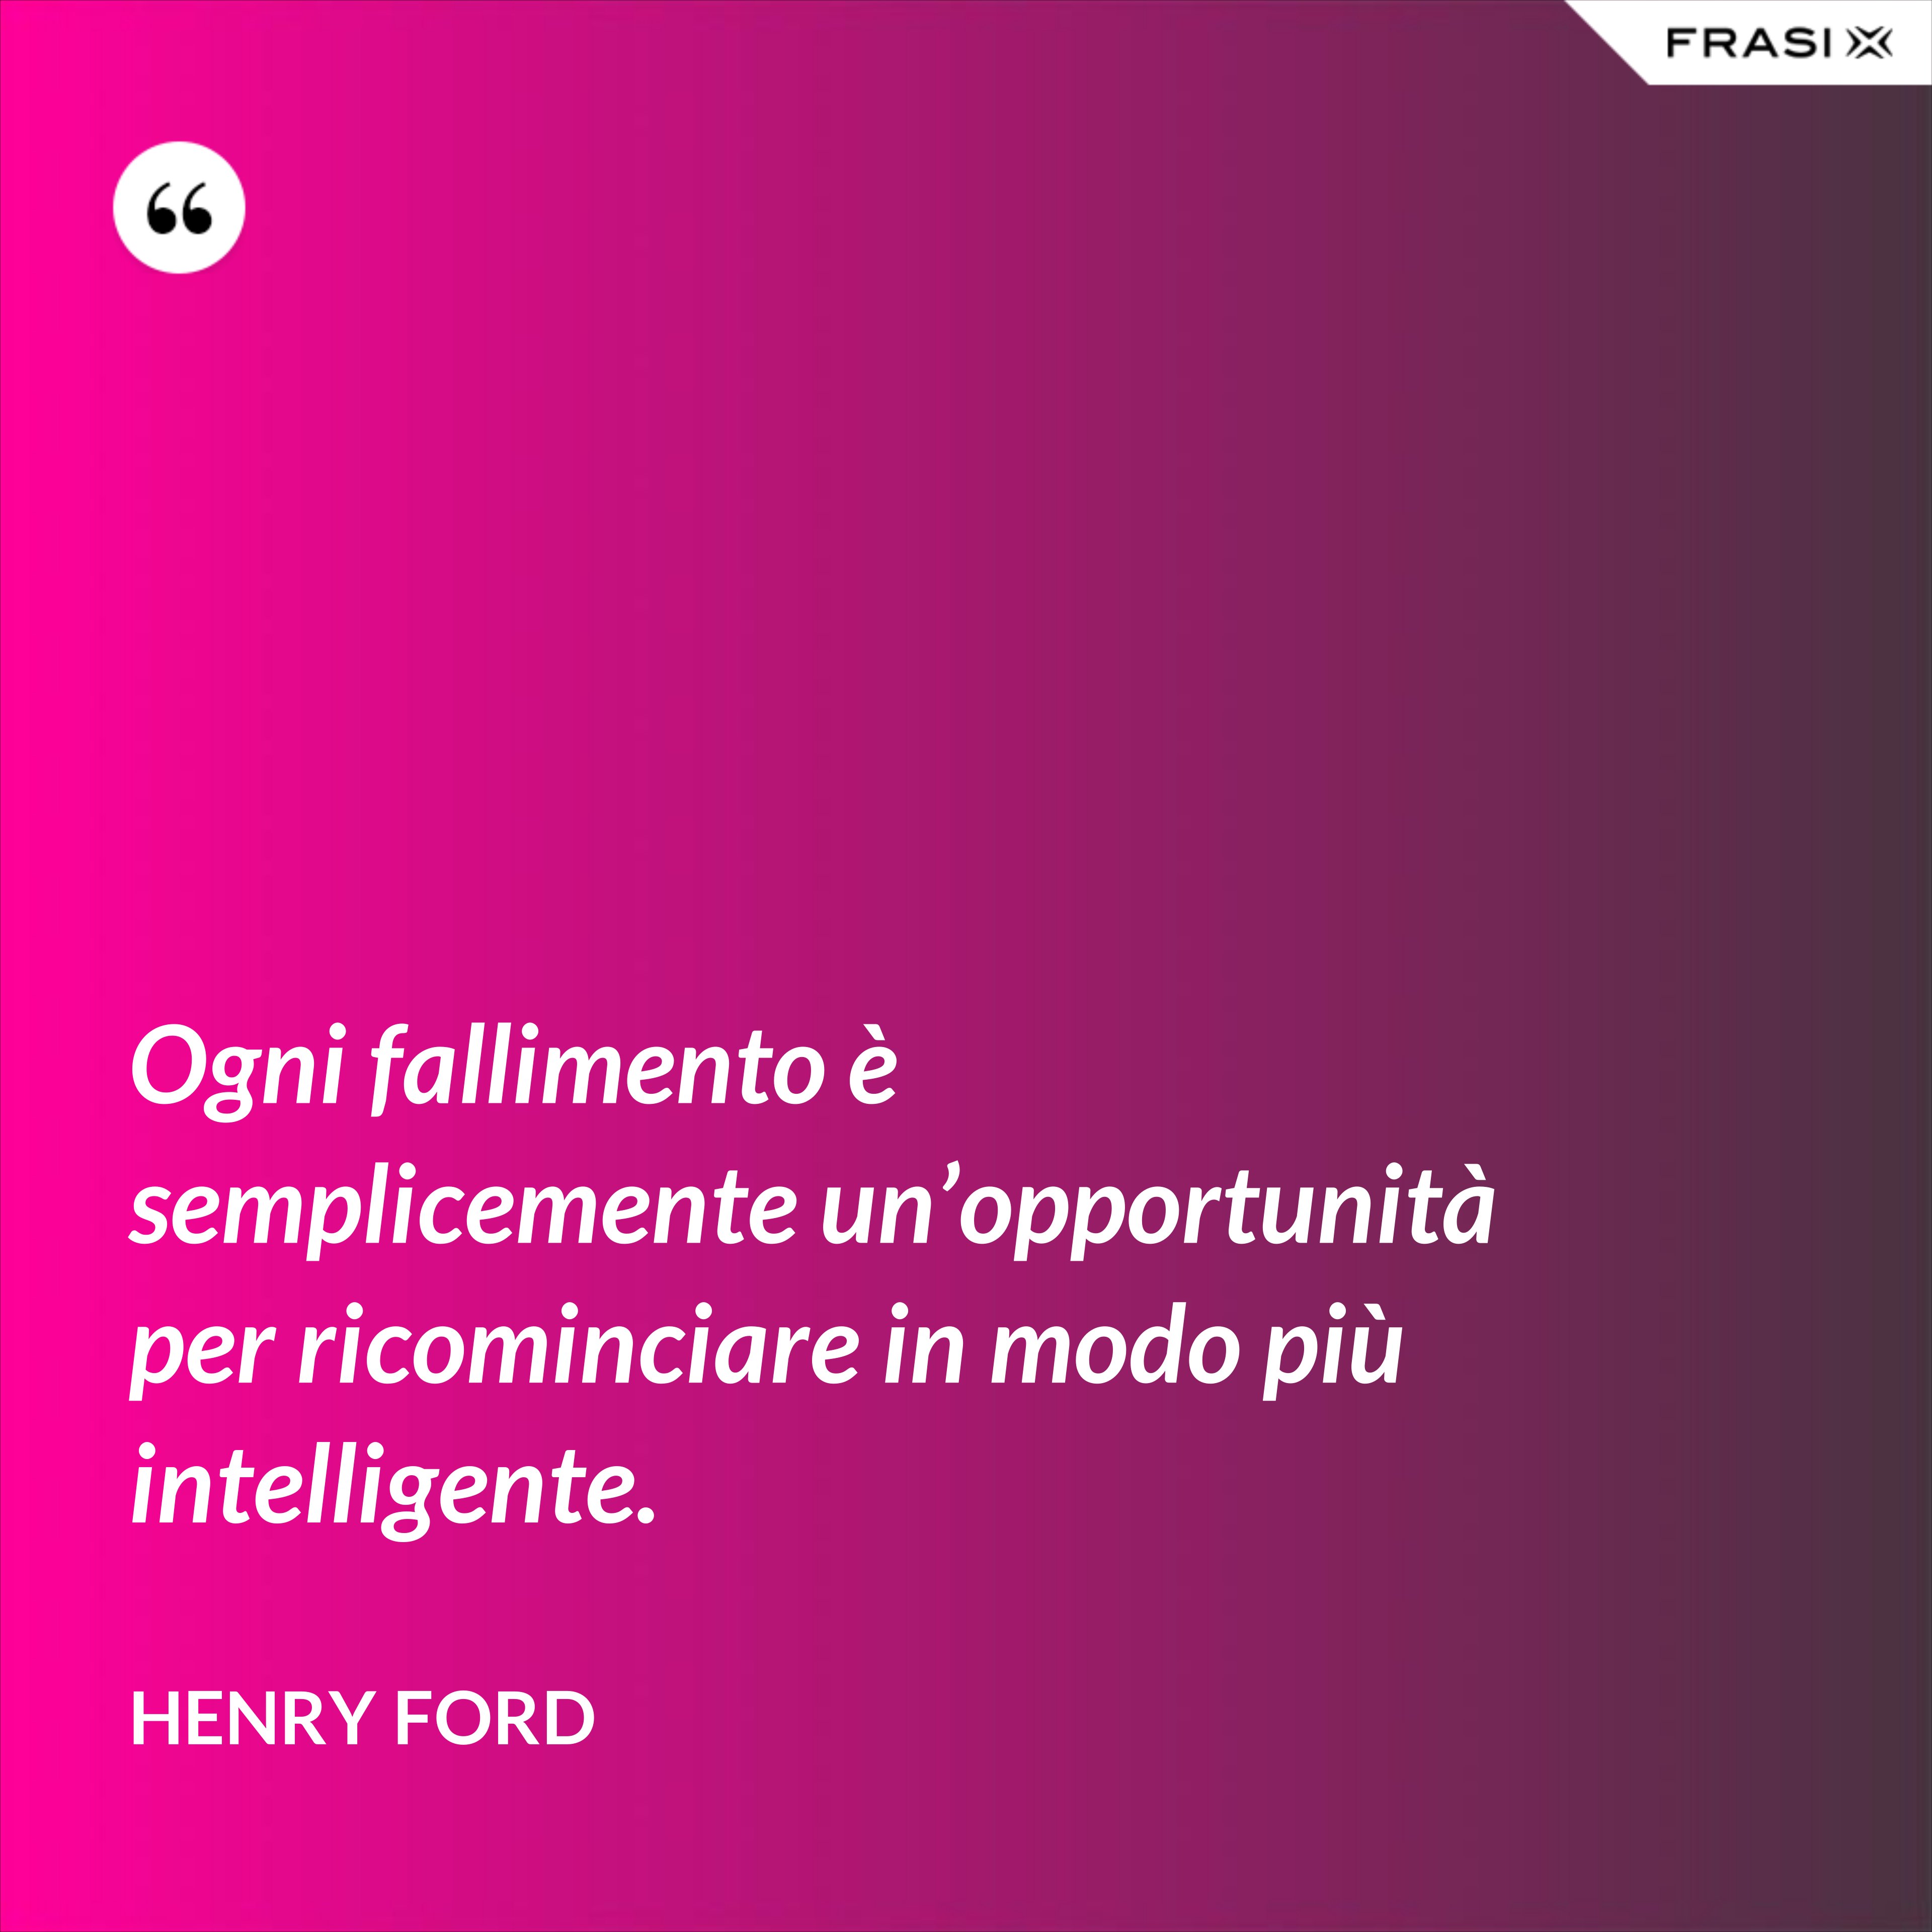 Ogni fallimento è semplicemente un’opportunità per ricominciare in modo più intelligente. - Henry Ford